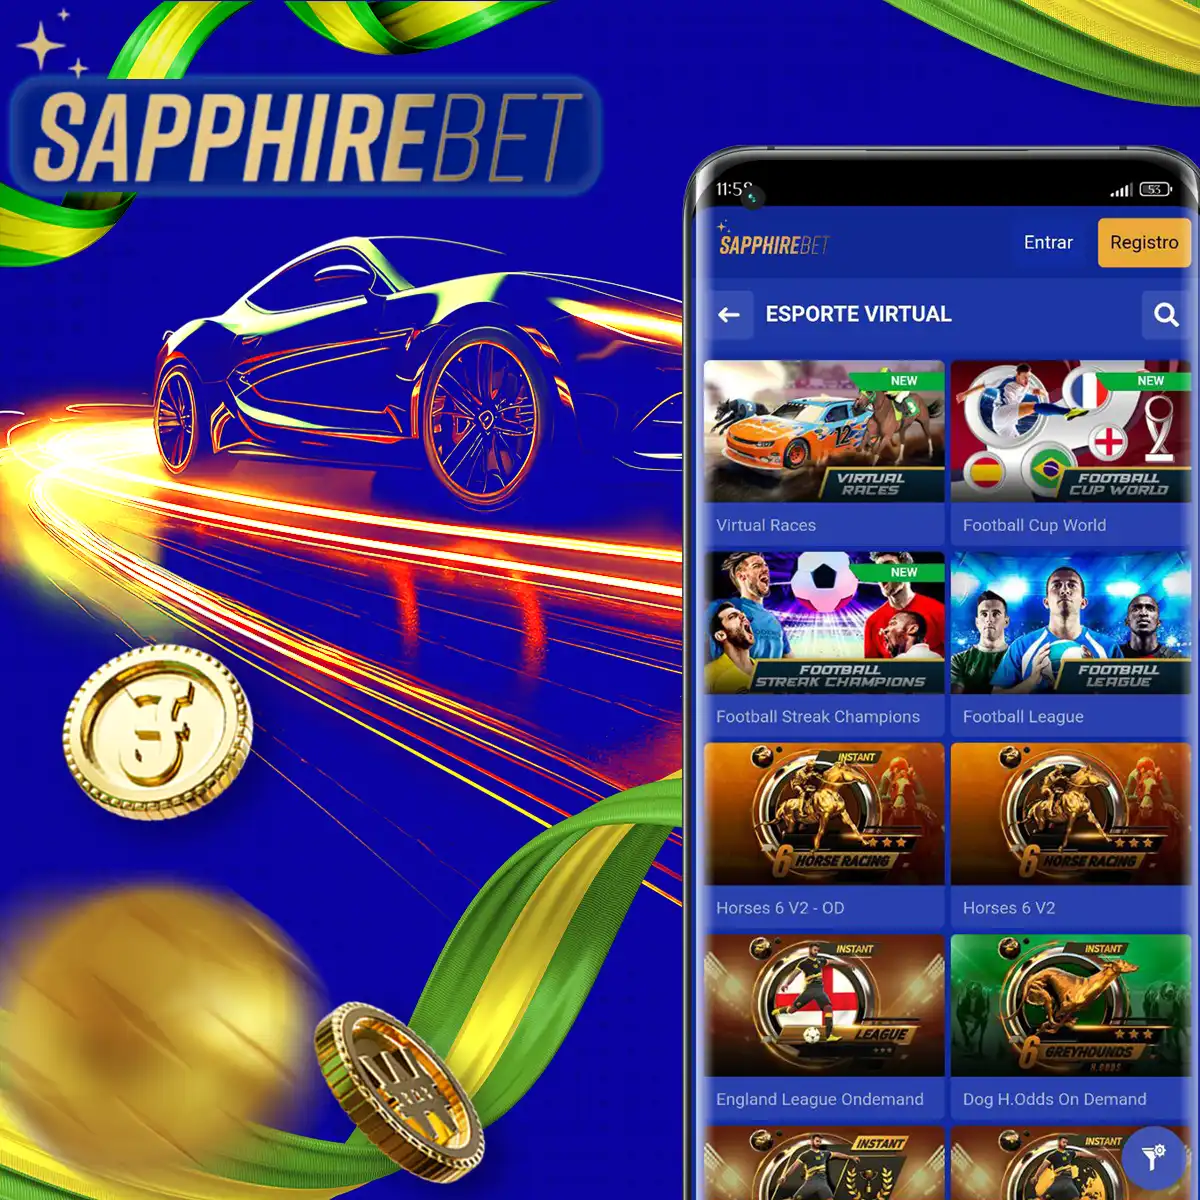 Esportes Virtuais da casa de apostas Sapphirebet